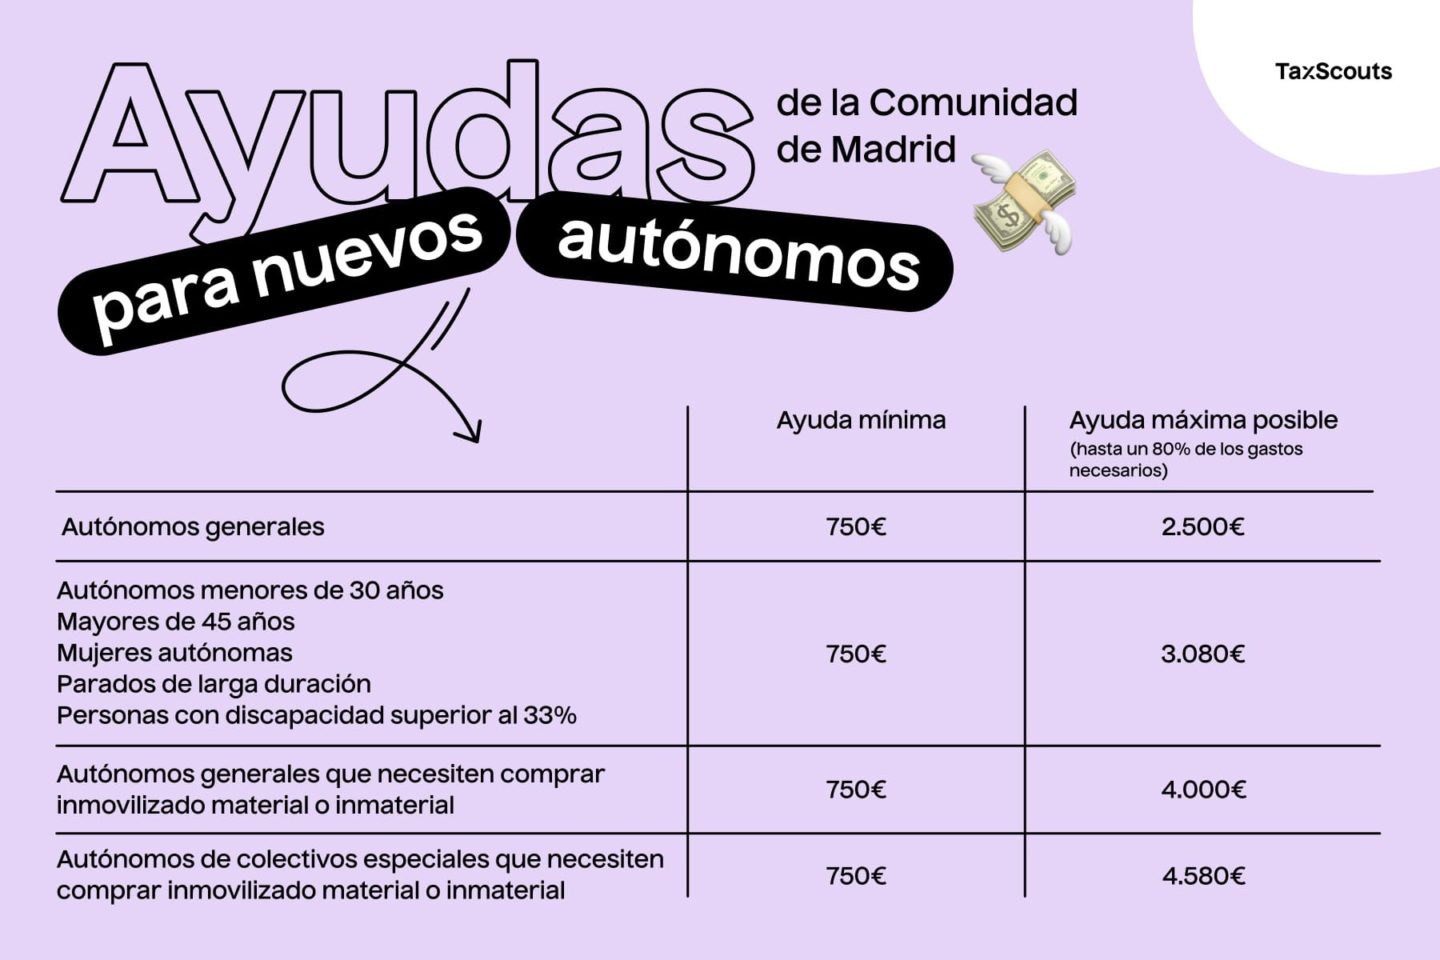 Aquí puedes ver la cantidad que puedes pedir de ayuda para nuevos autónomos en Madrid